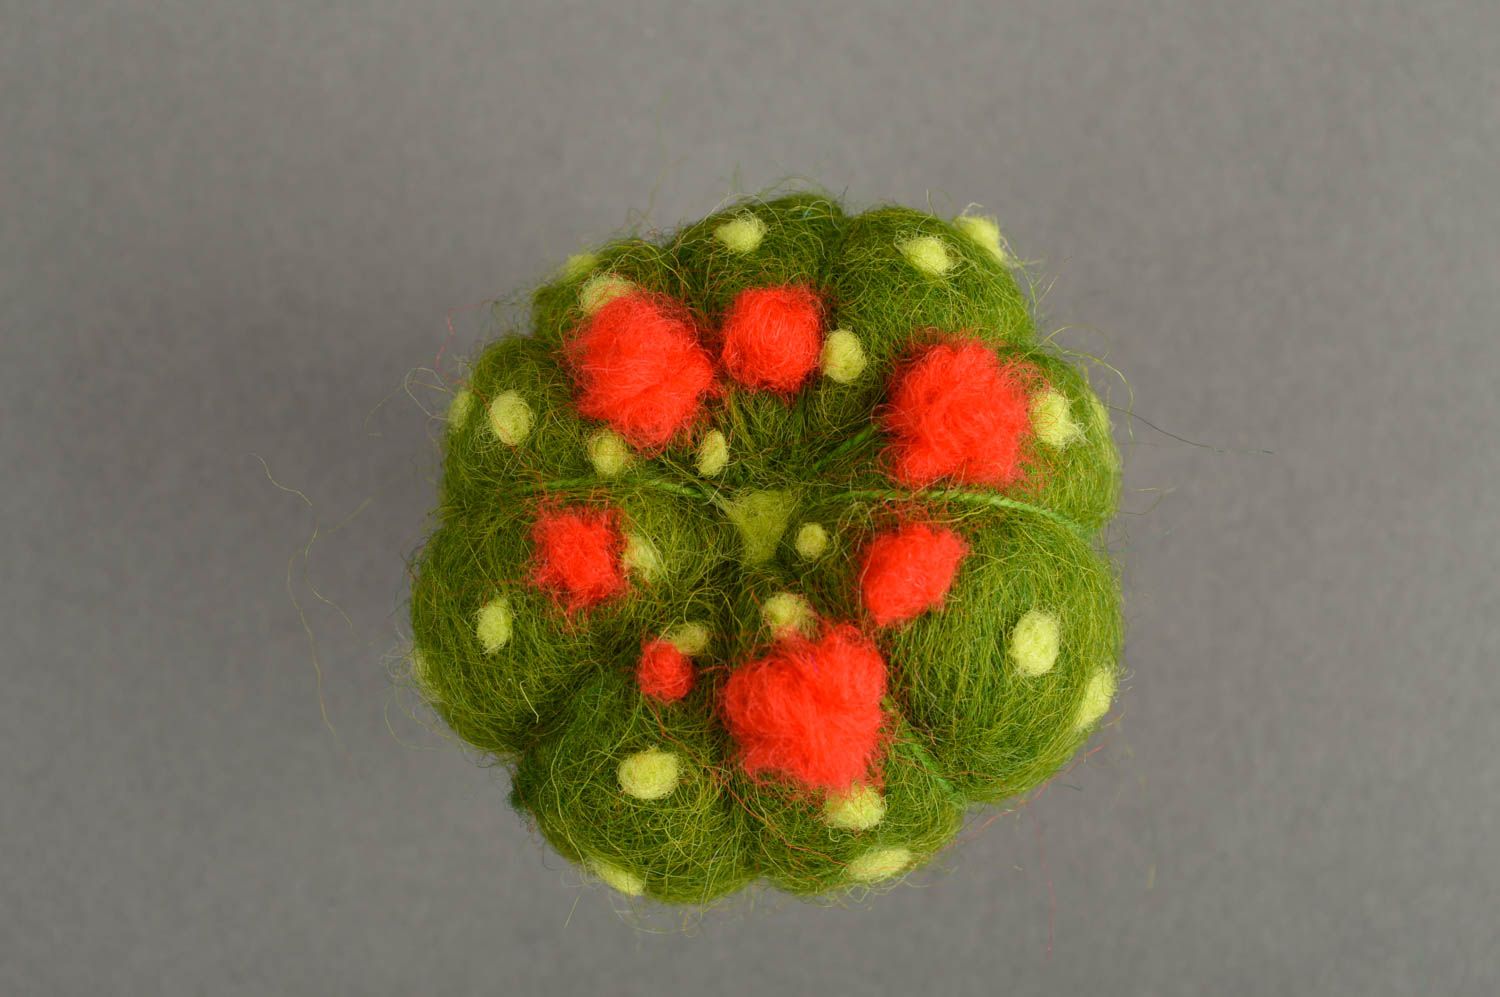 Plüsch Kaktus handmade Spielzeug aus Stoff kreative Deko aus Naturmaterialien foto 4